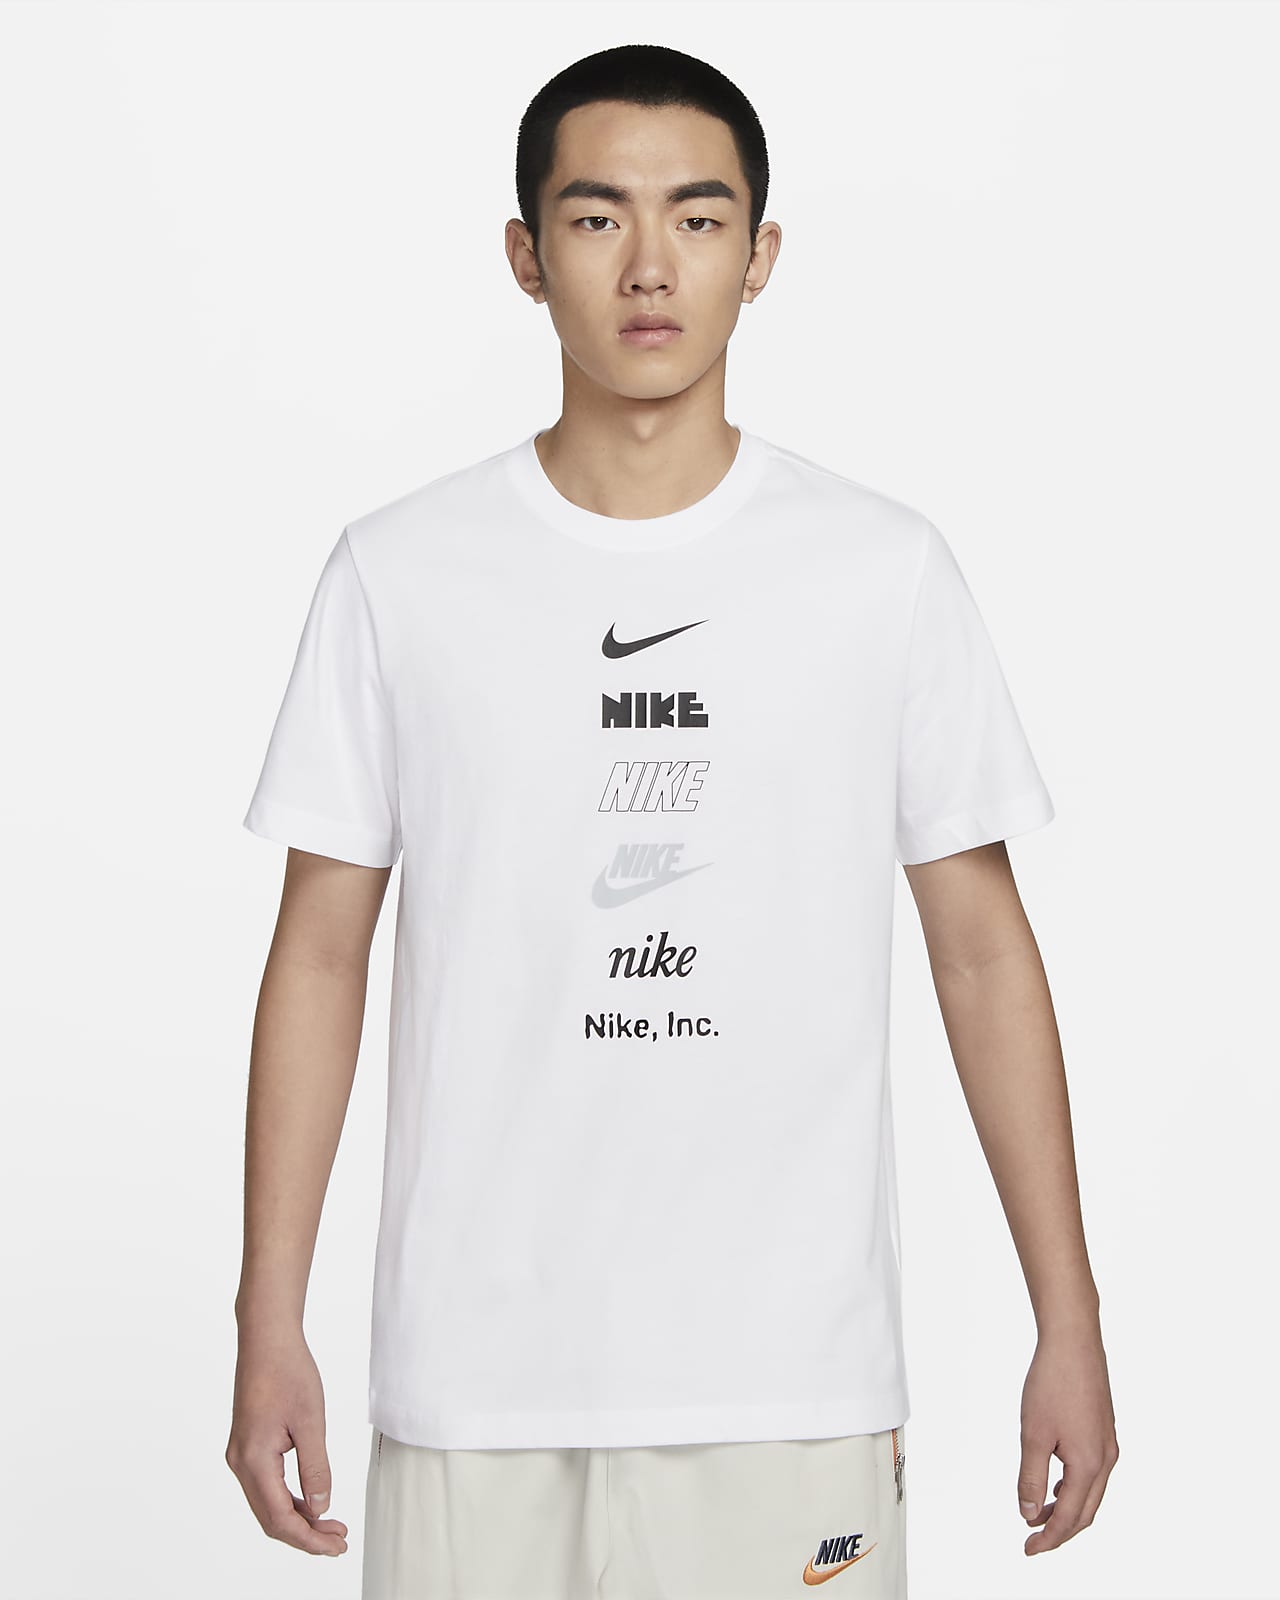 나이키 스포츠웨어 남성 티셔츠. 나이키 코리아